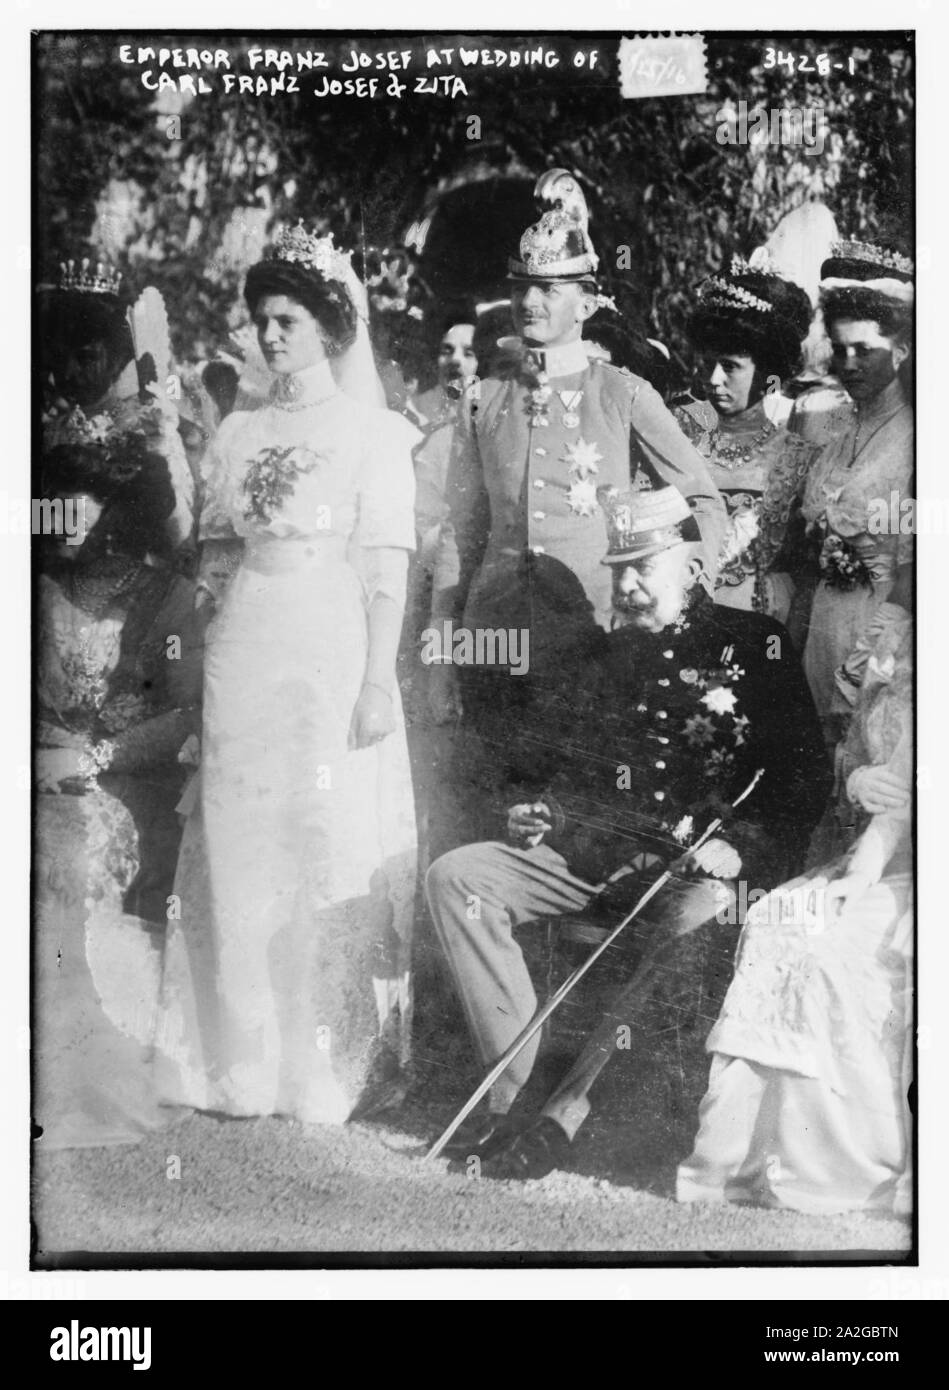 L'imperatore Franz Josef al matrimonio di Carl Franz Josef e Zita Foto Stock